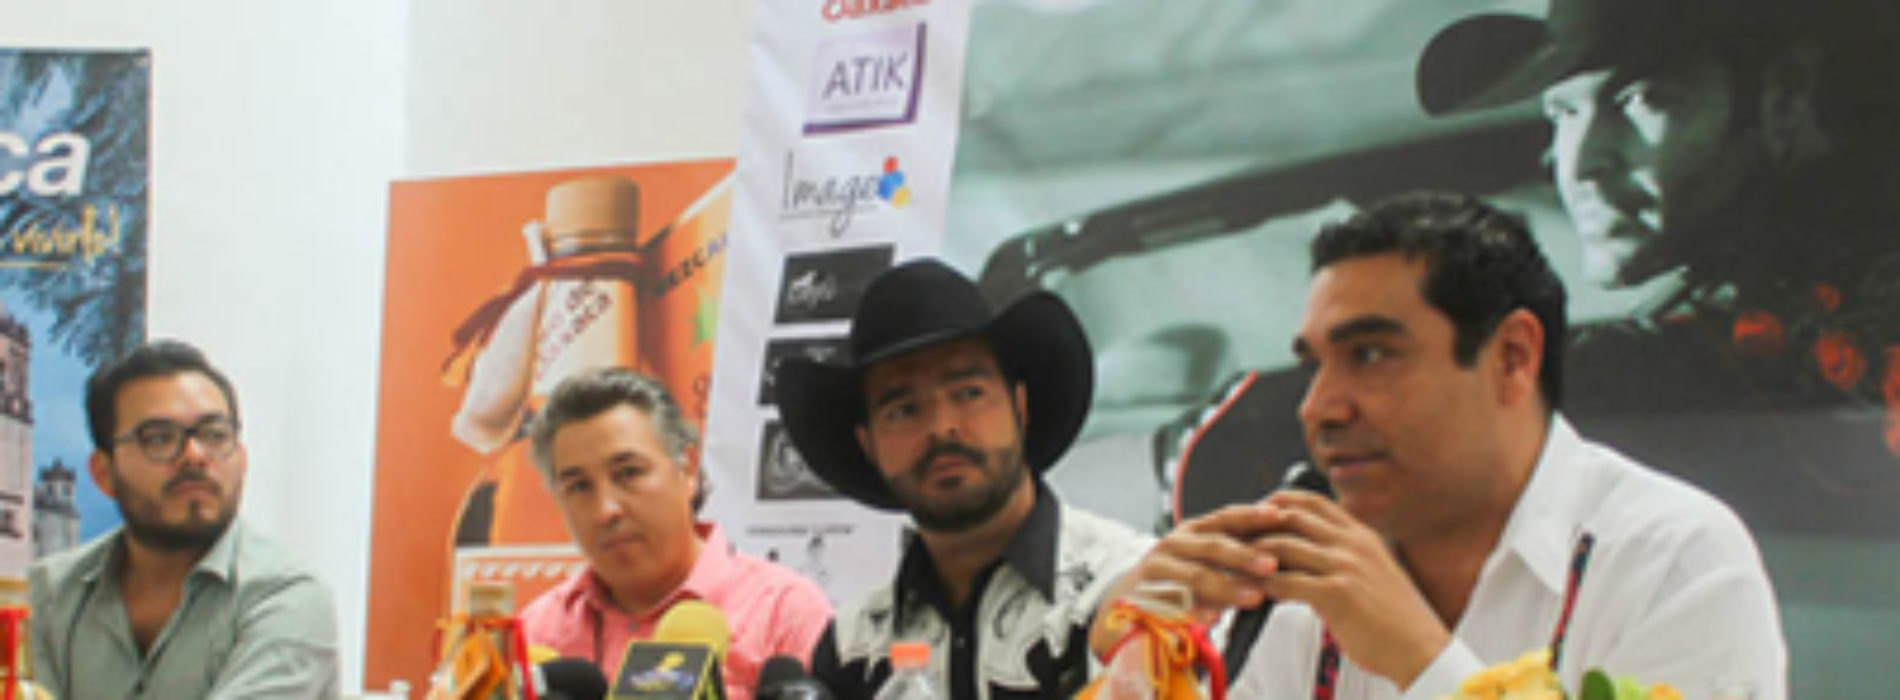 Bellezas de Oaxaca estelarizan nuevo videoclip del cantante Pablo Montero